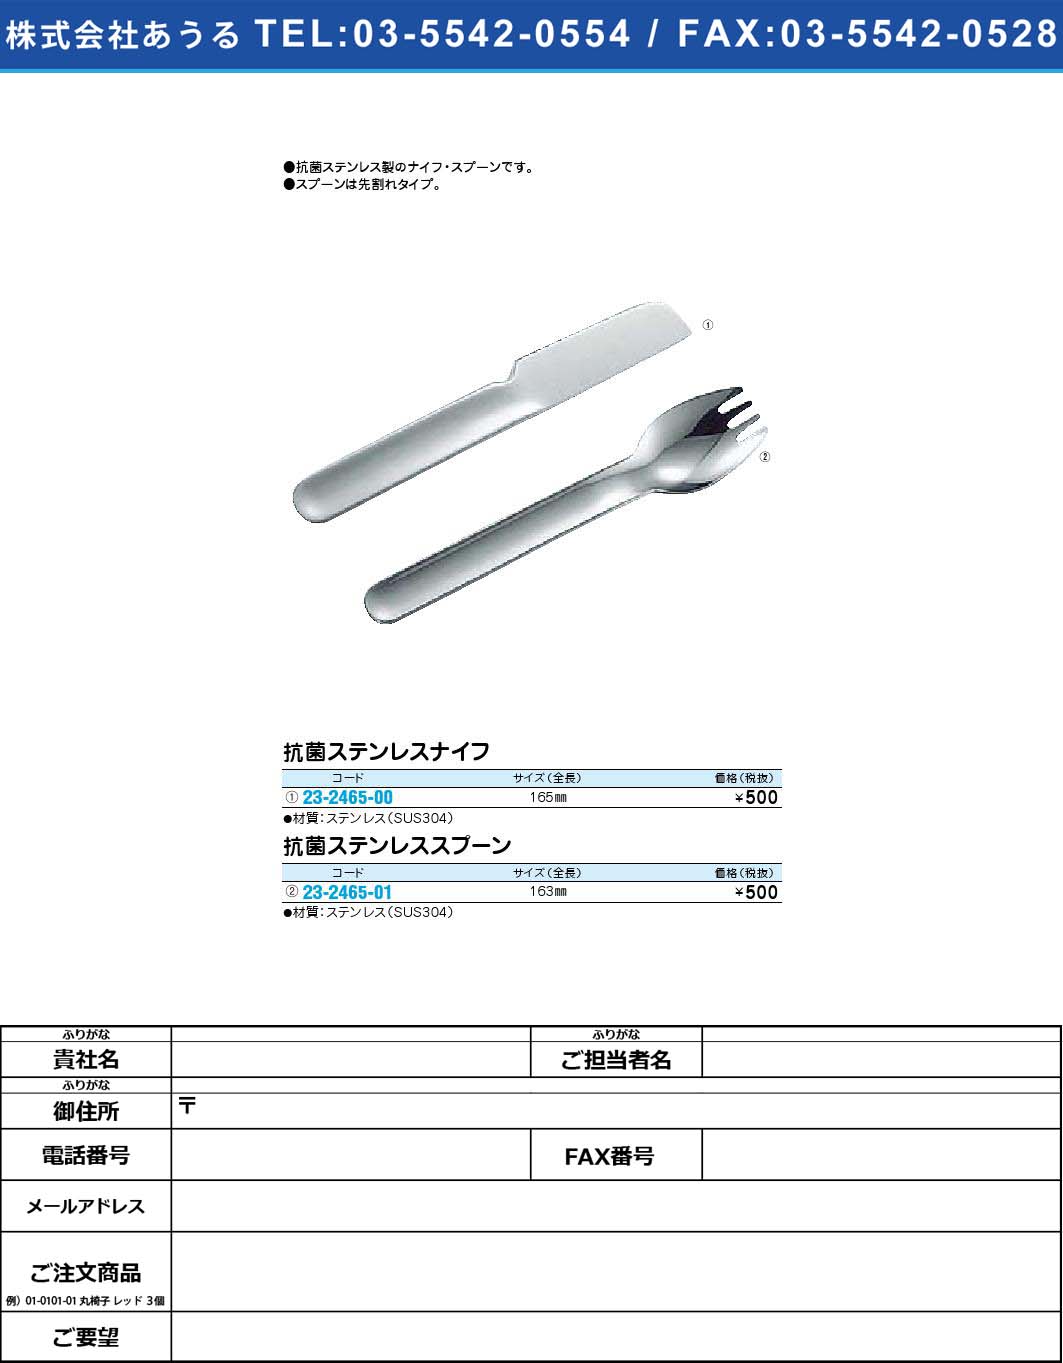 抗菌ステンレスナイフ 【1単位】(23-2465-00)